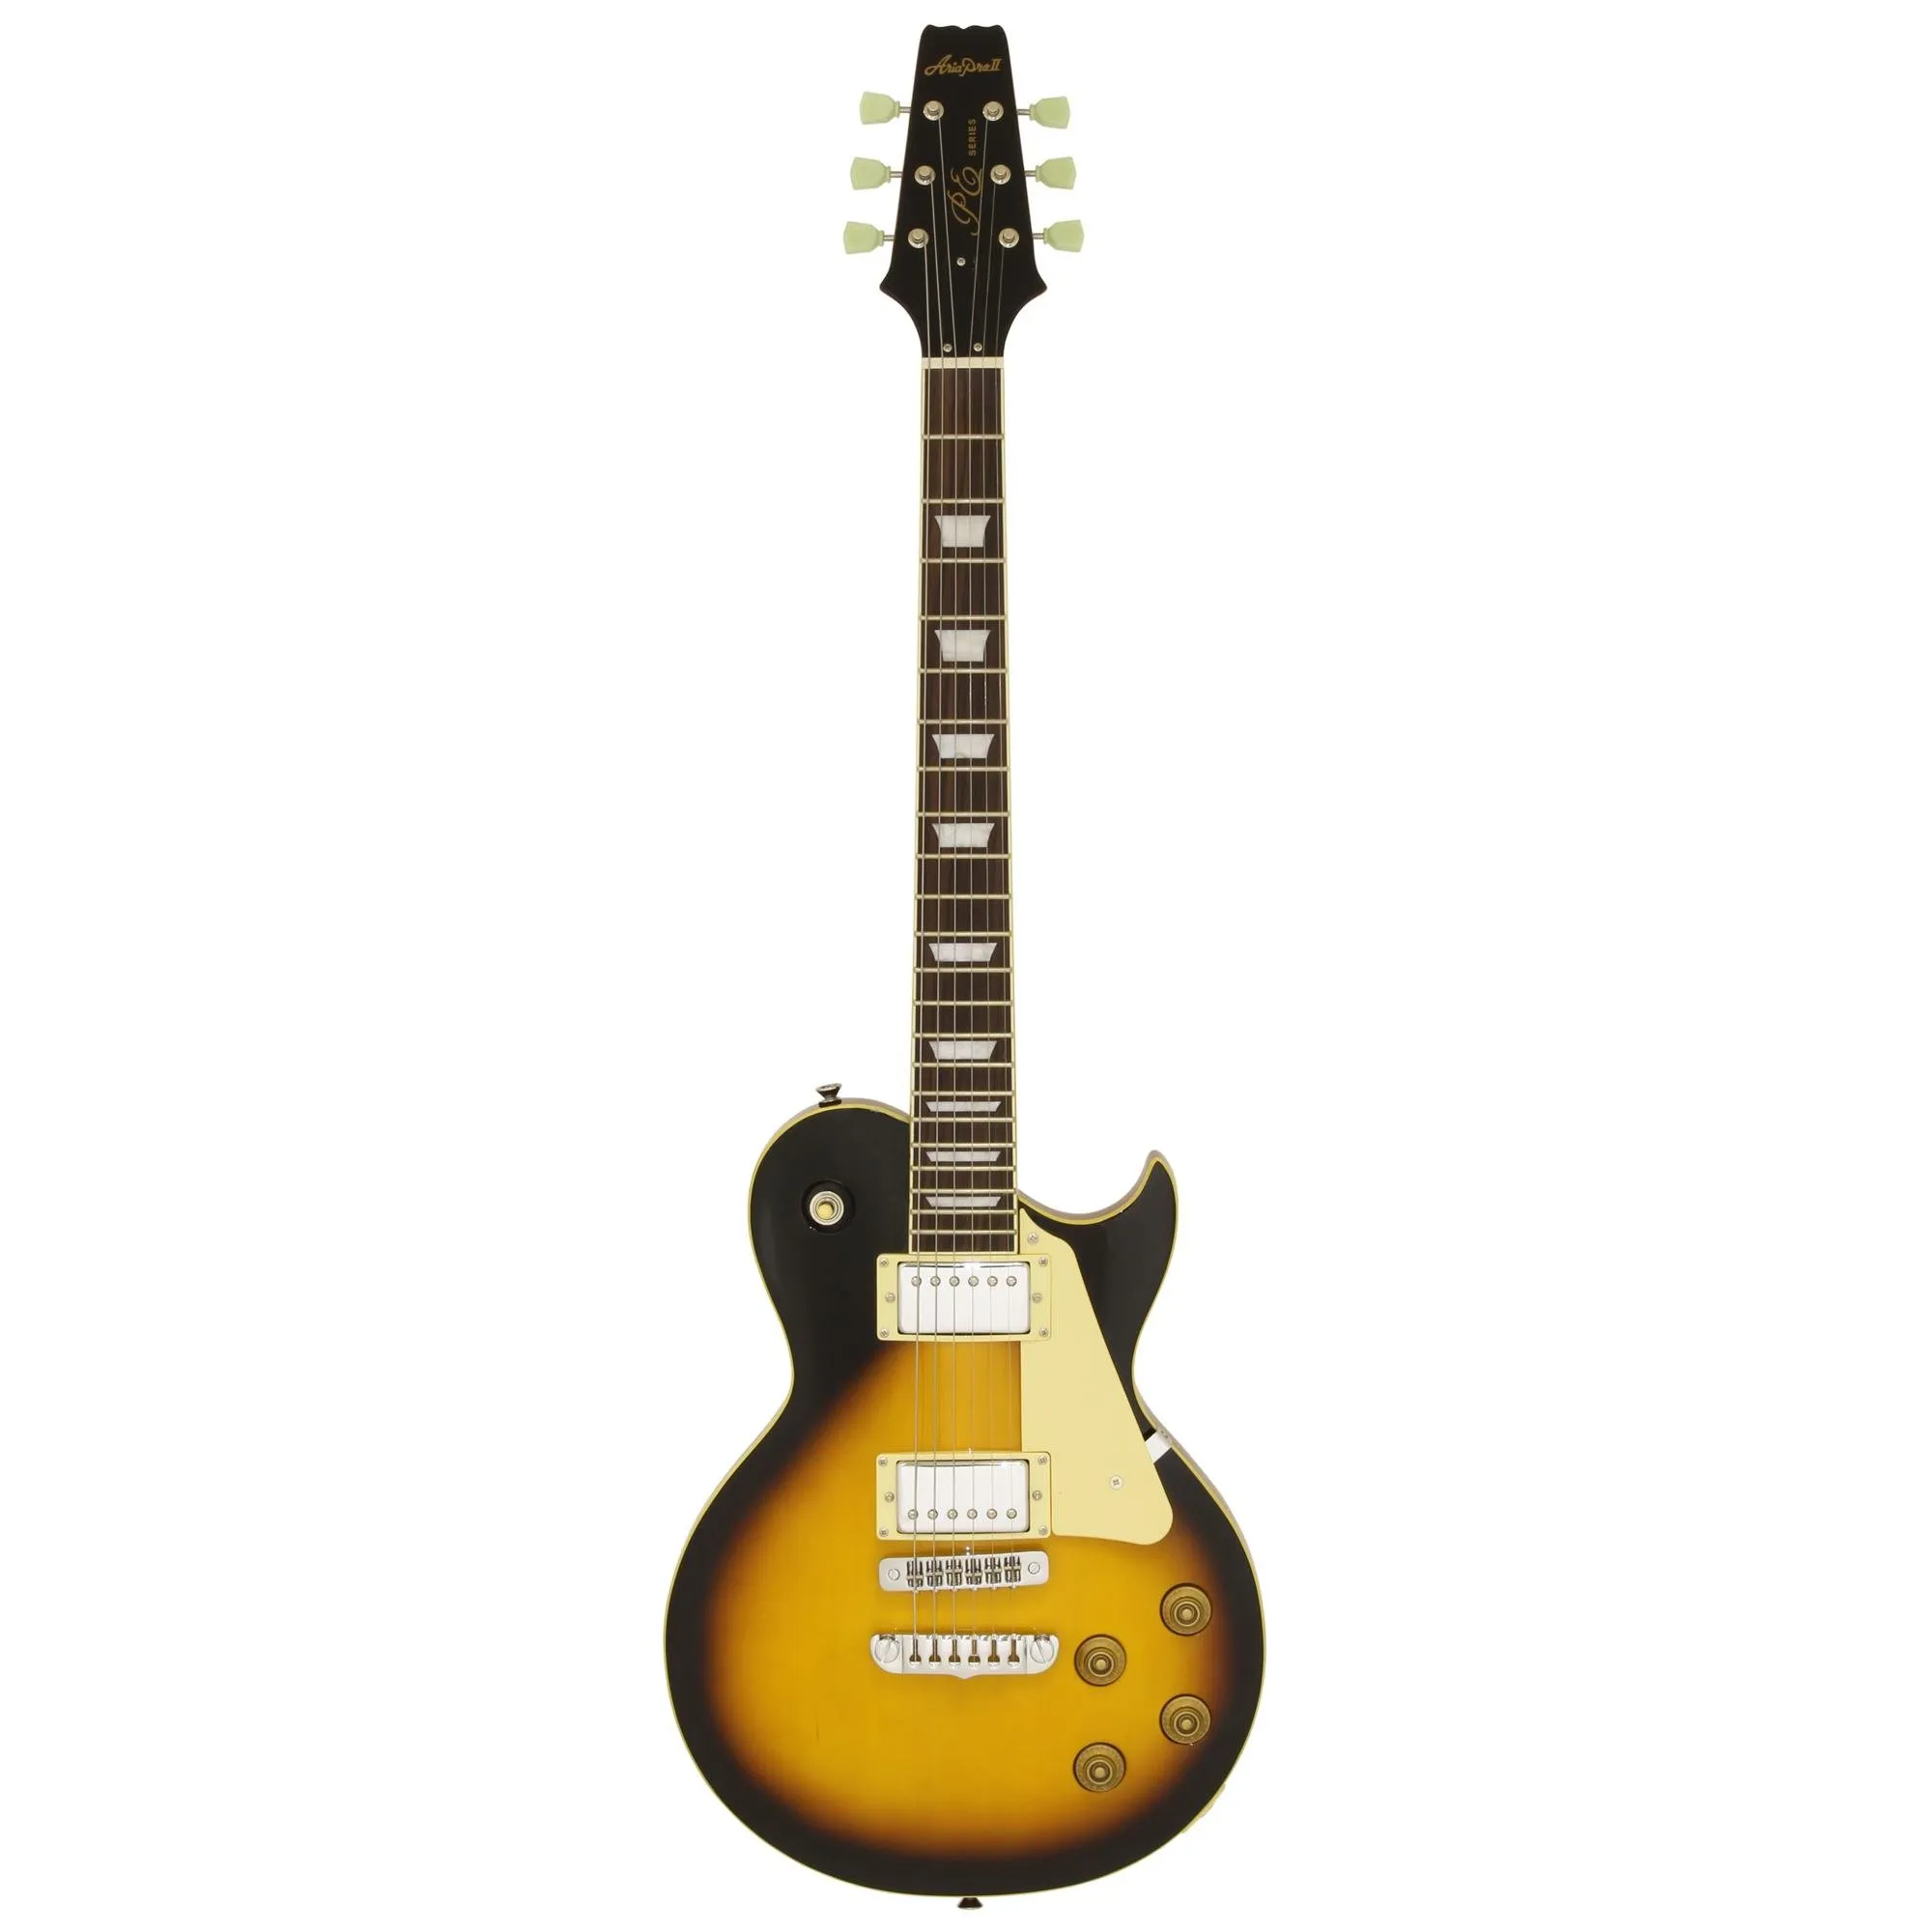 Guitarra Aria Pro II PE-350STD Aged Brown Sunburst por 2.796,00 à vista no boleto/pix ou parcele em até 12x sem juros. Compre na loja Mundomax!